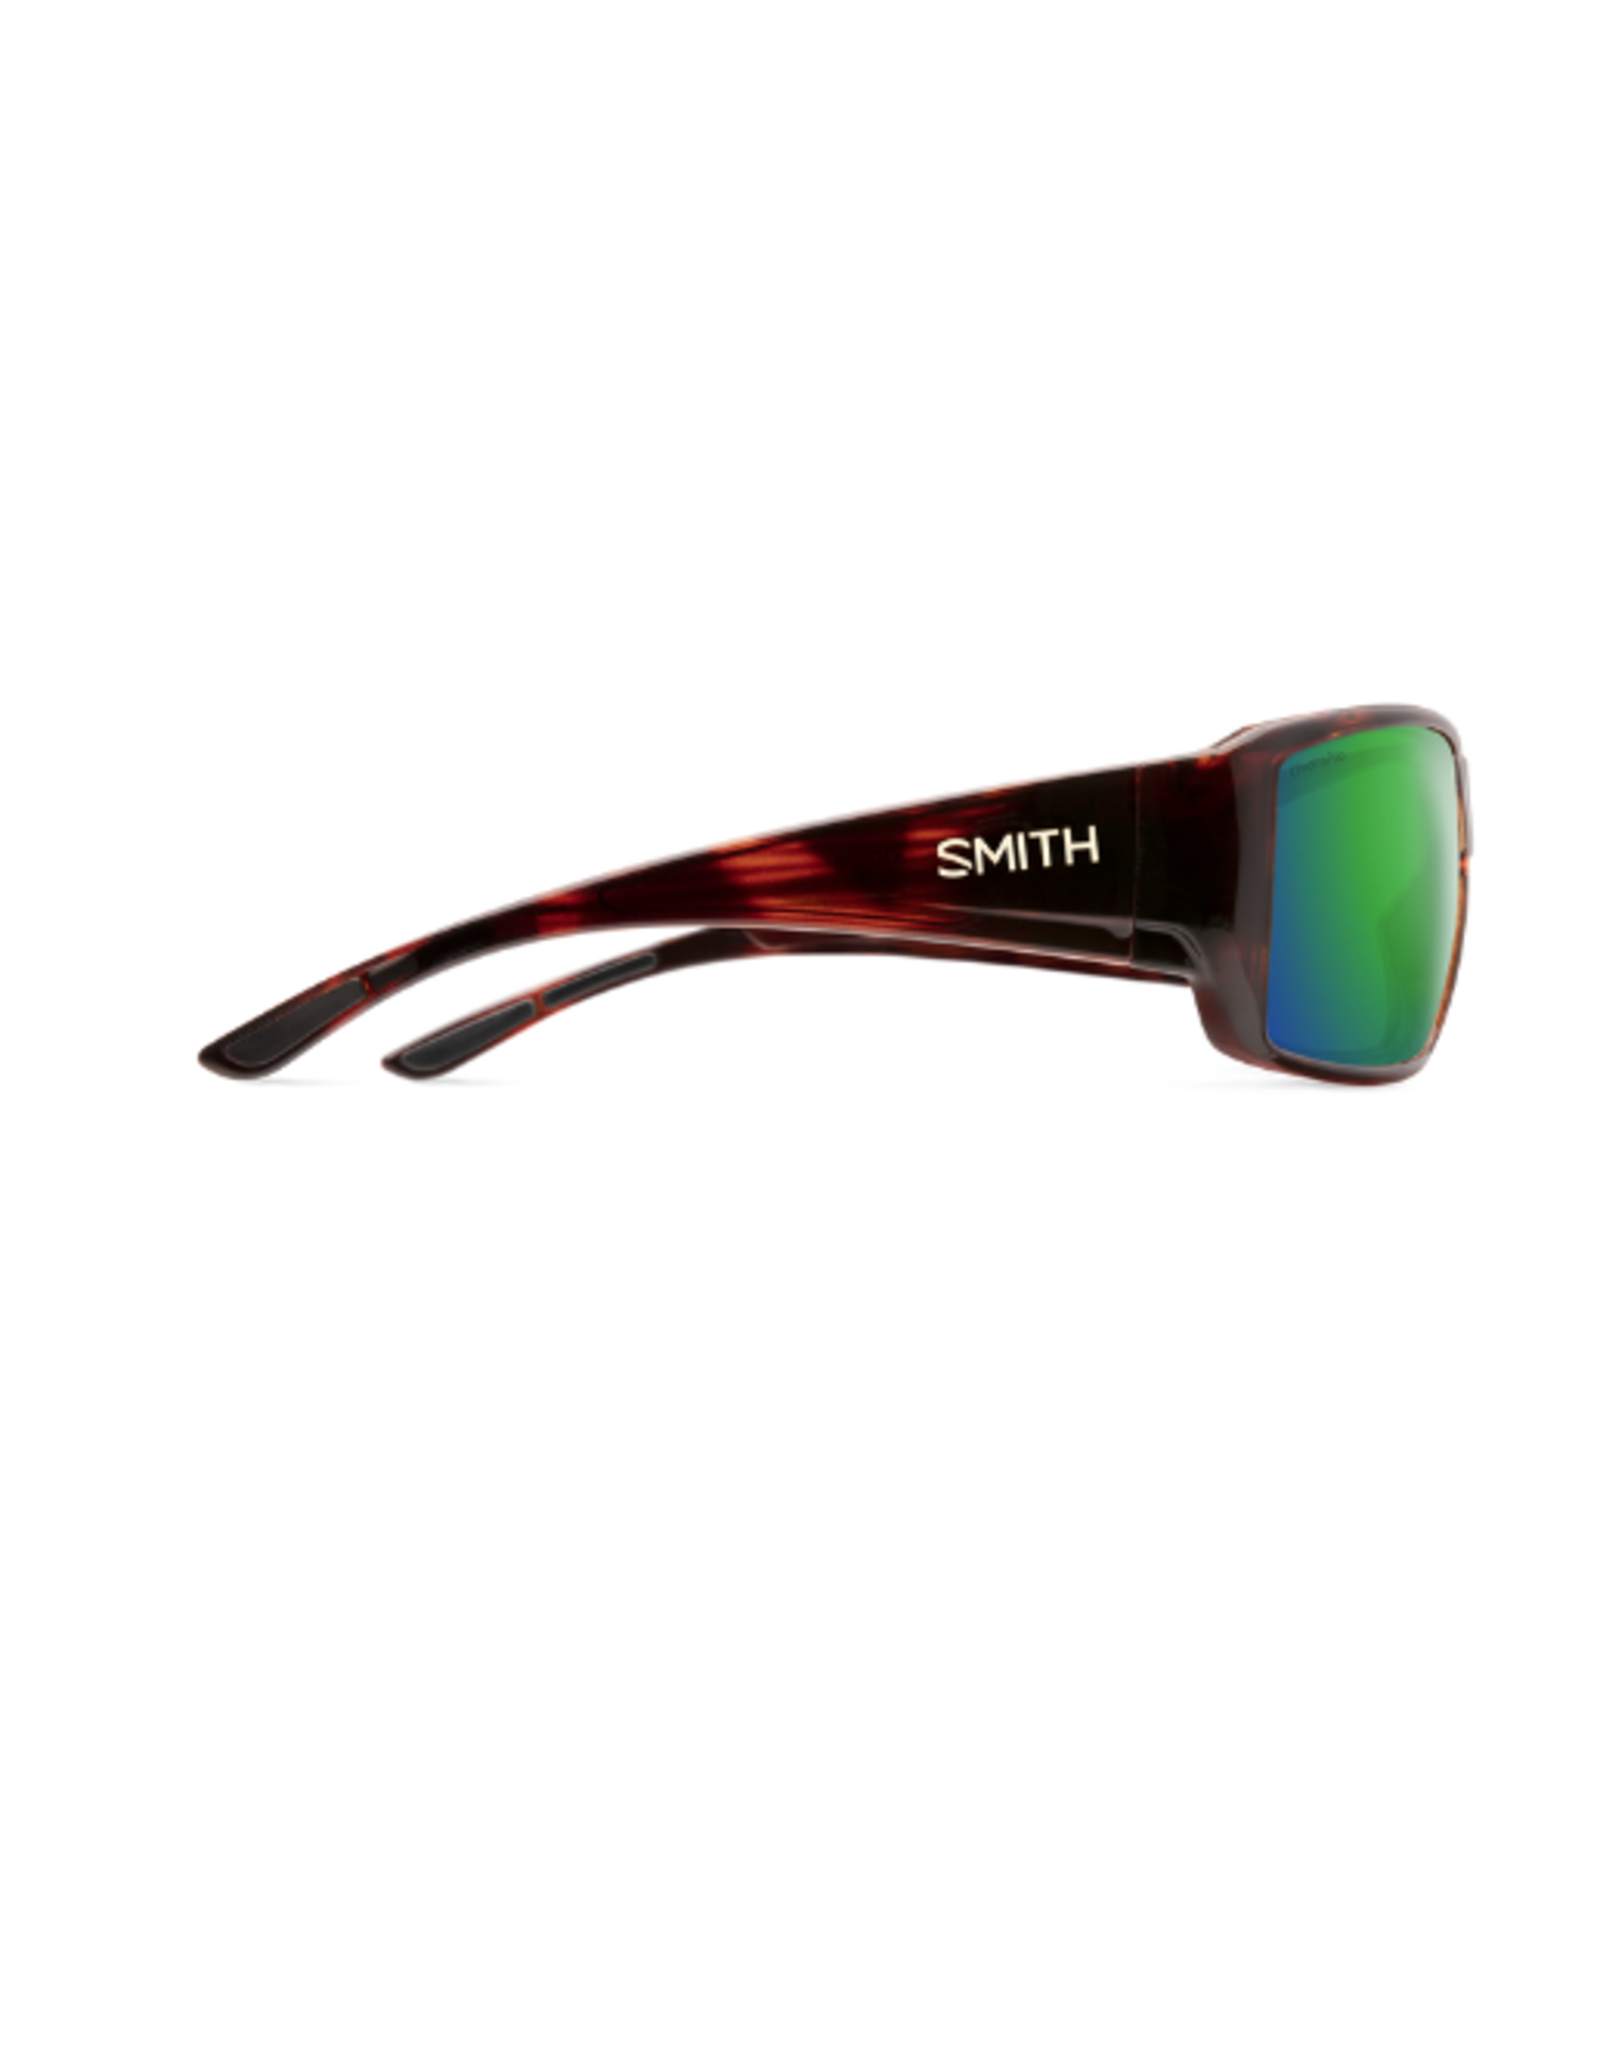 SMITH SMITH Guide's Choice Tortoise + ChromaPop Polarized Green Mirror Lens